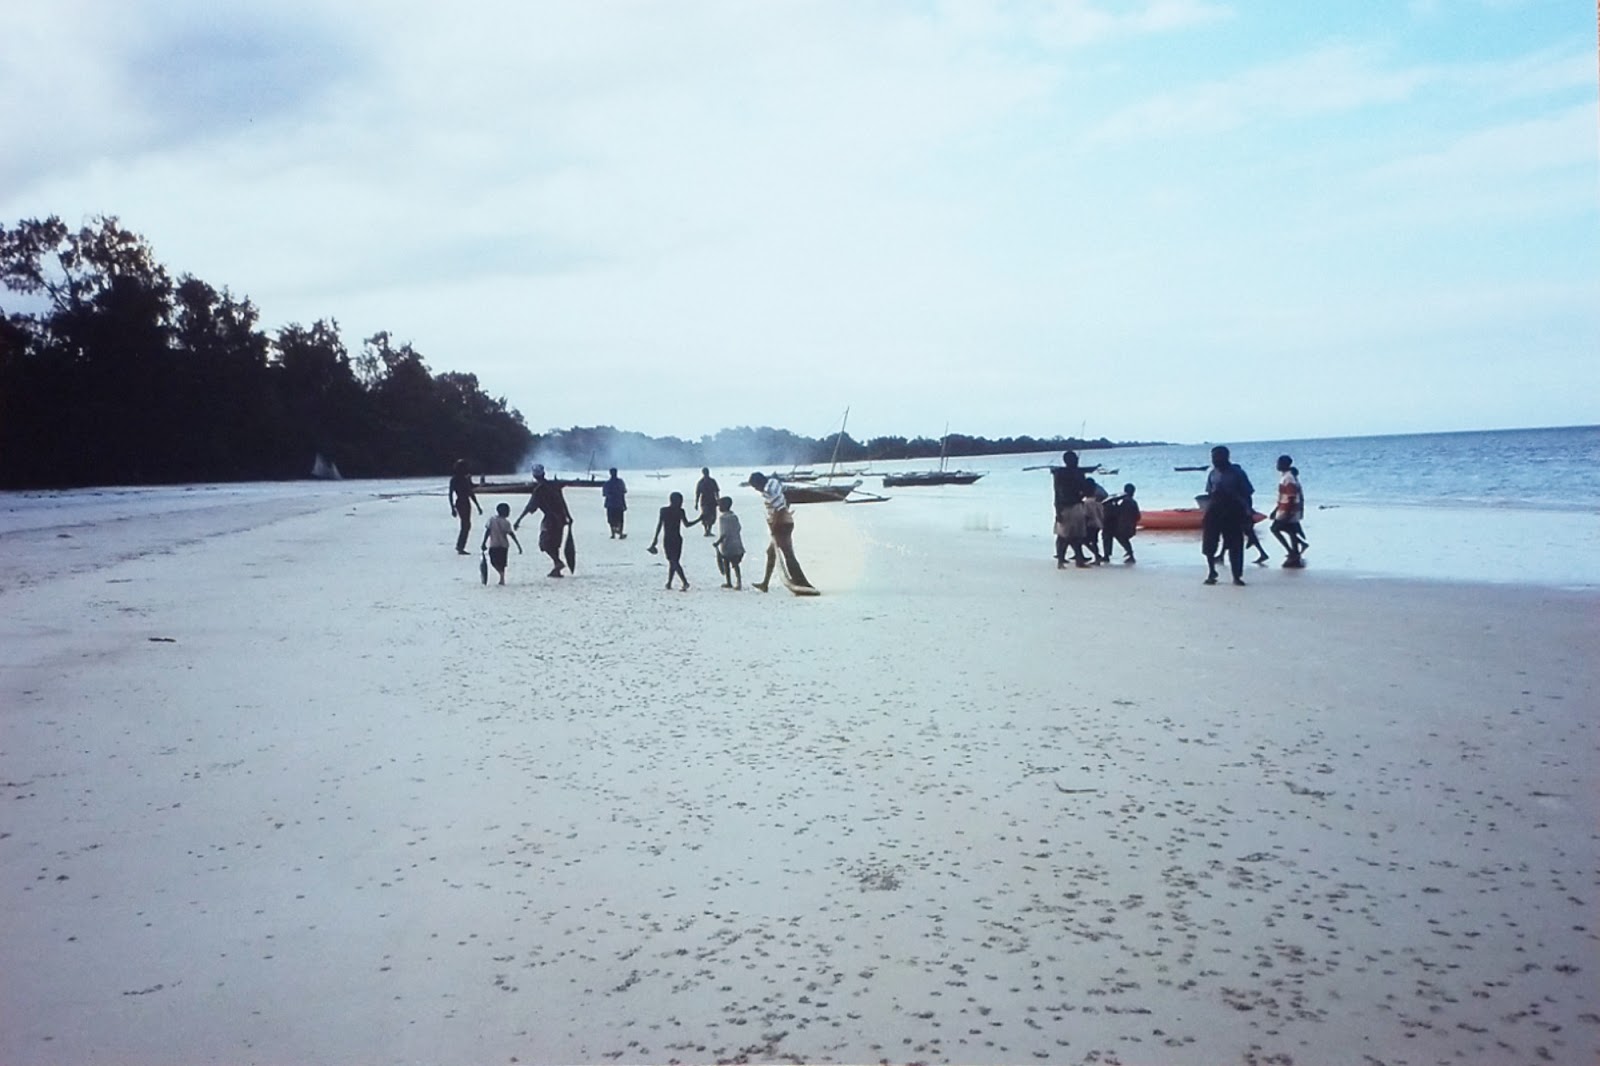 Foto di Vumawimbi Beach ubicato in zona naturale